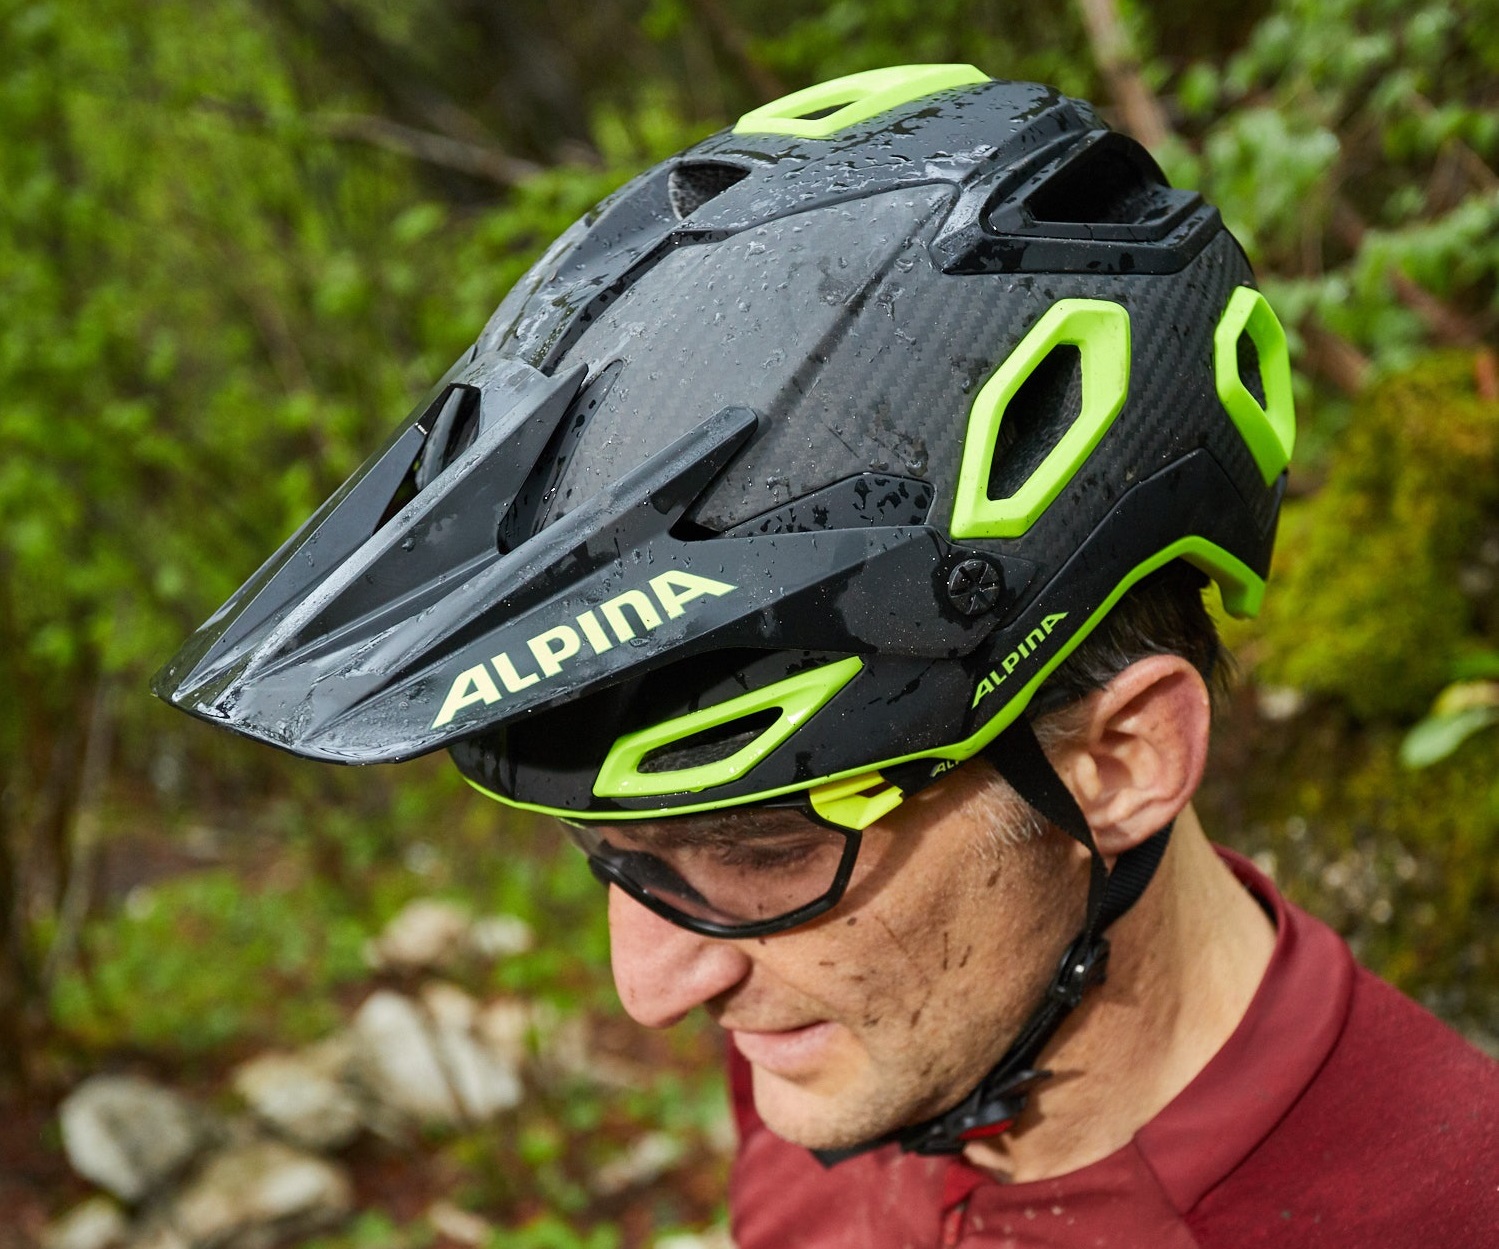 Maximaler Schutz beim Biken So sieht „Safety first“ bei Alpina aus.